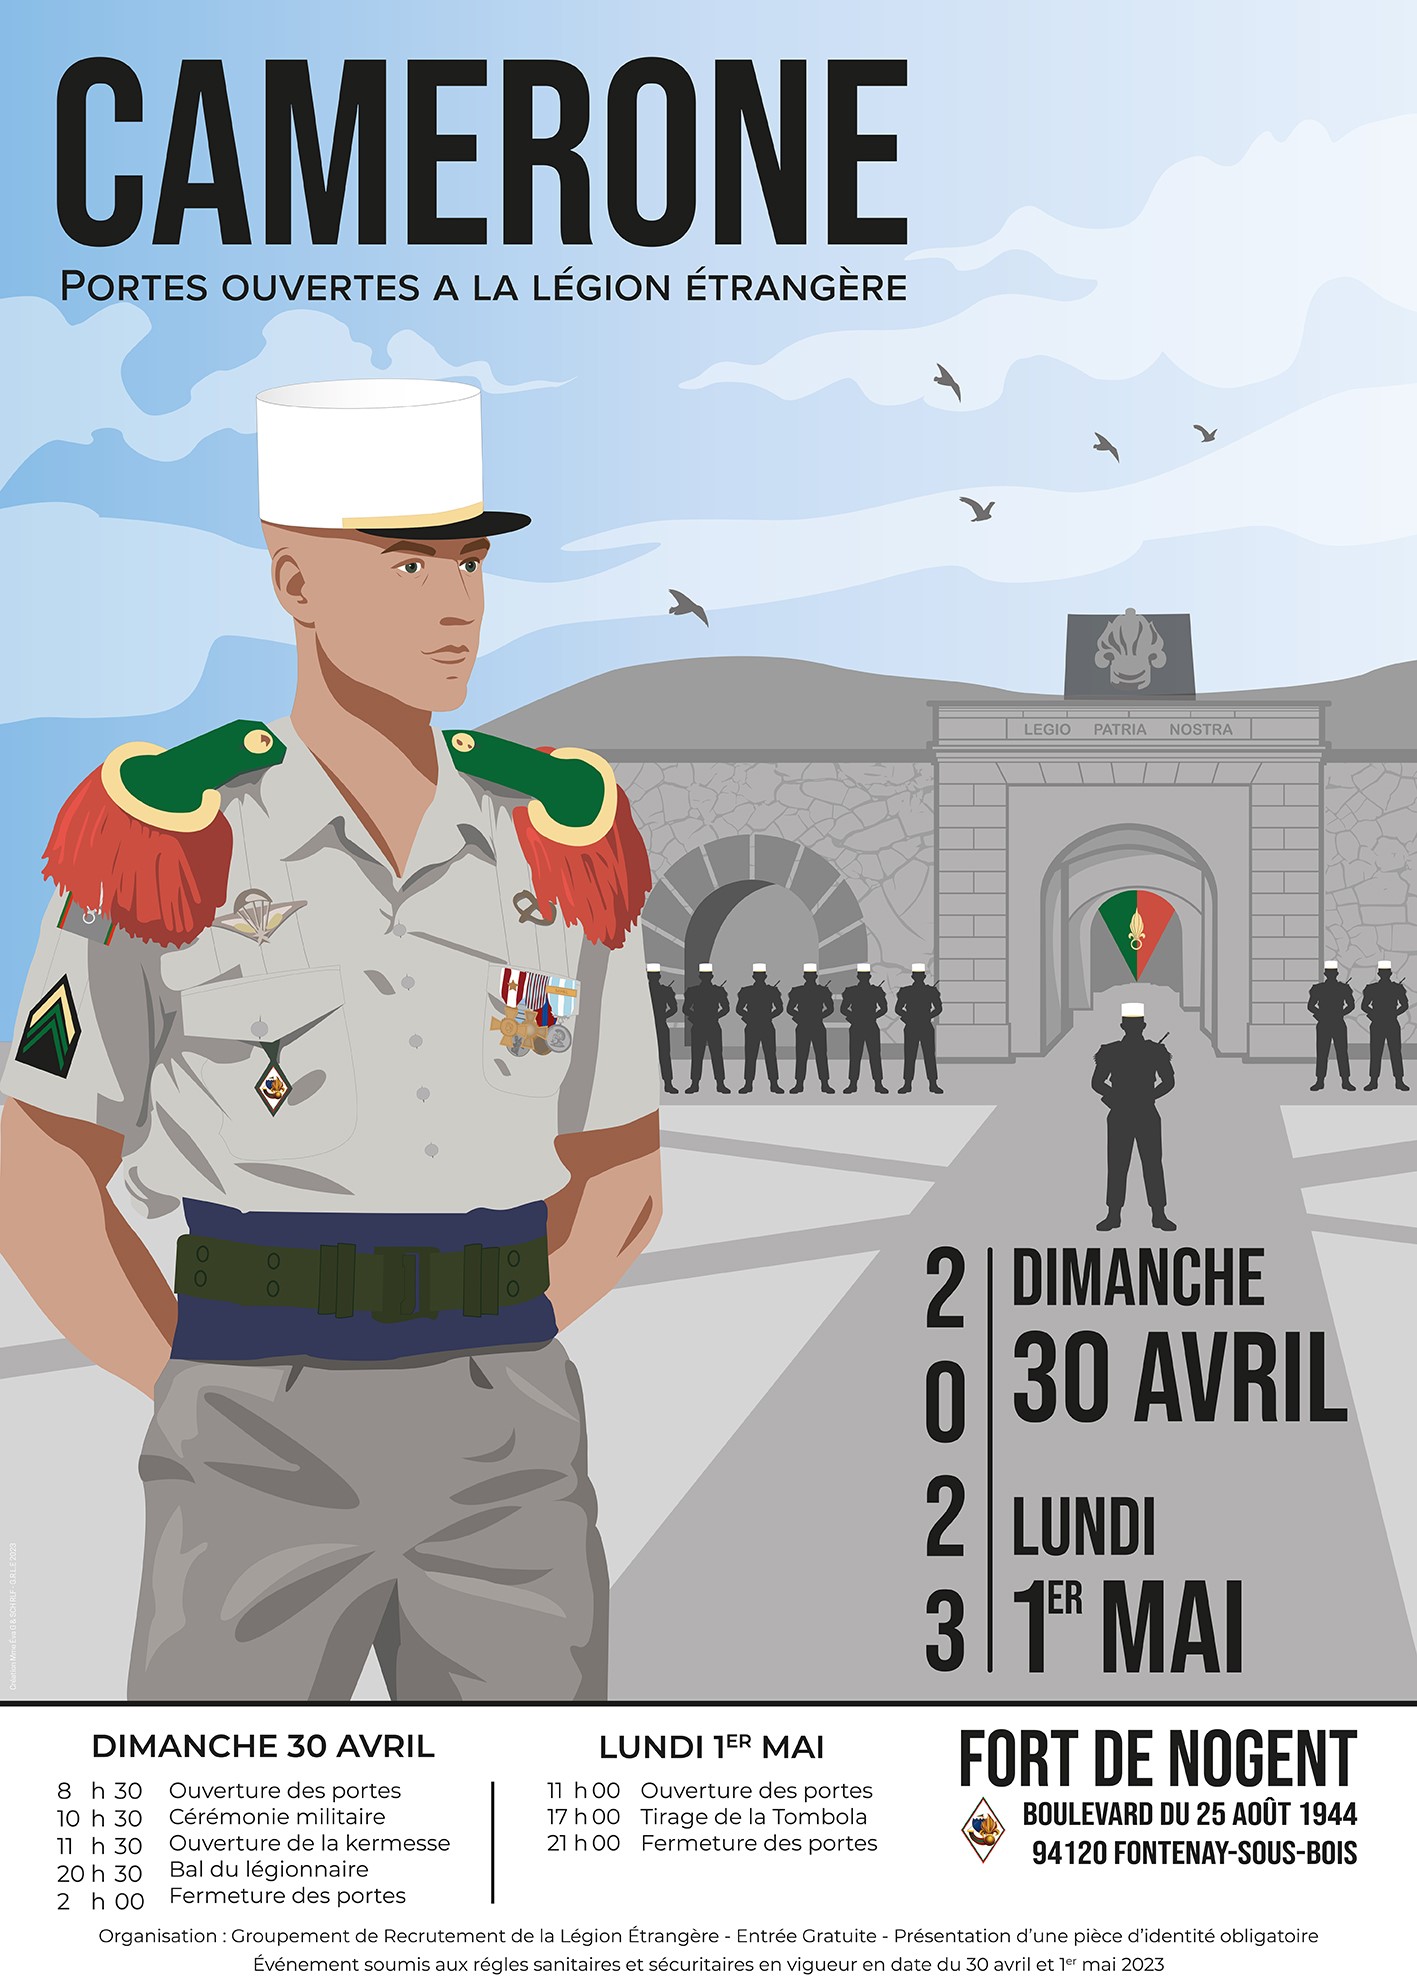 La Légion Etrangère ouvre un bureau à la Réunion - Réunionnais du Monde